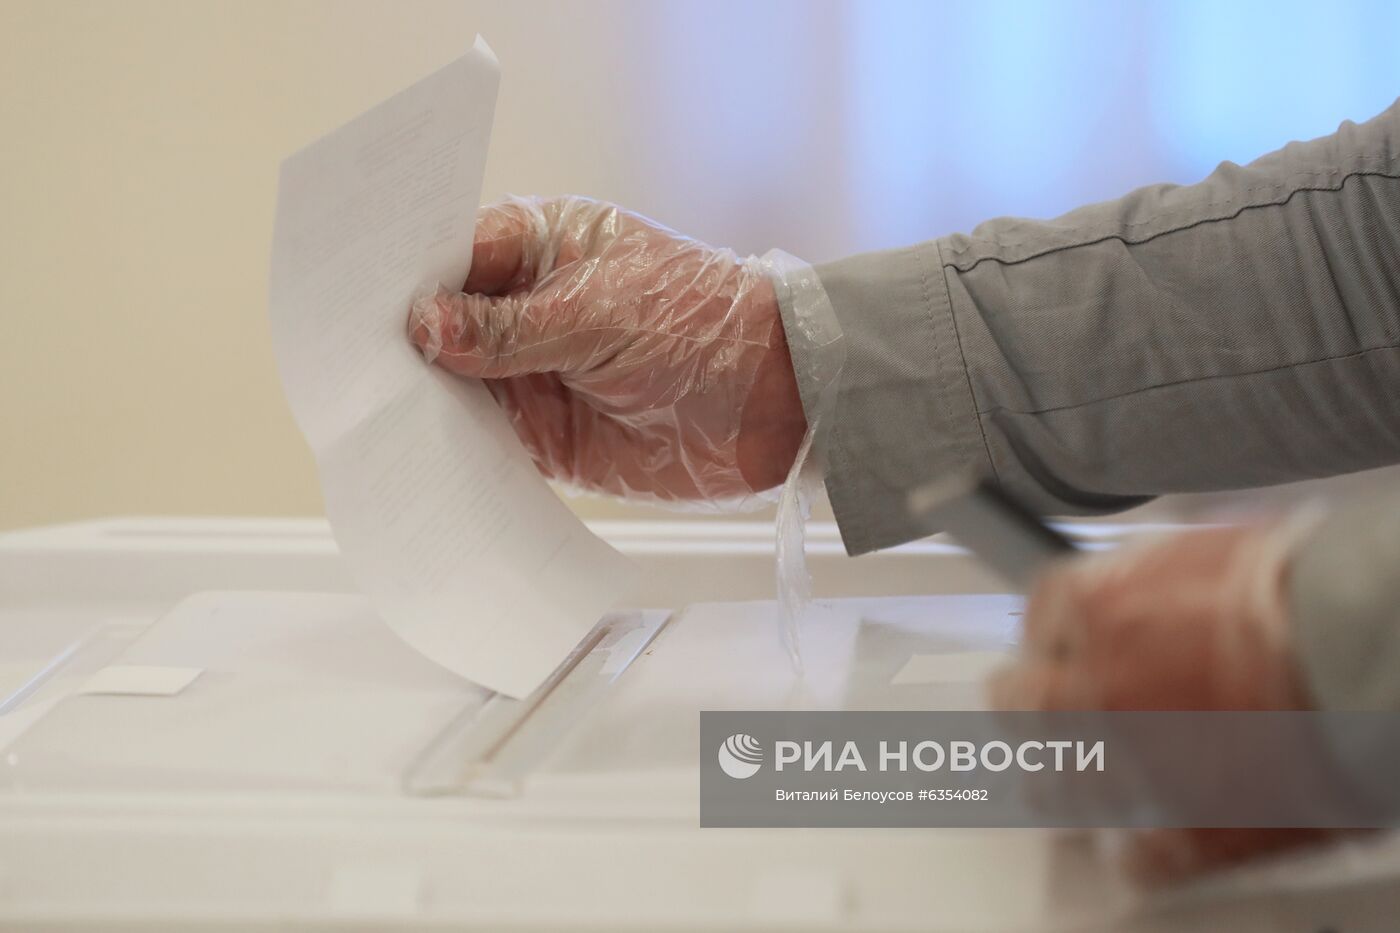 Голосование на выборах президента в посольстве Таджикистана в Москве